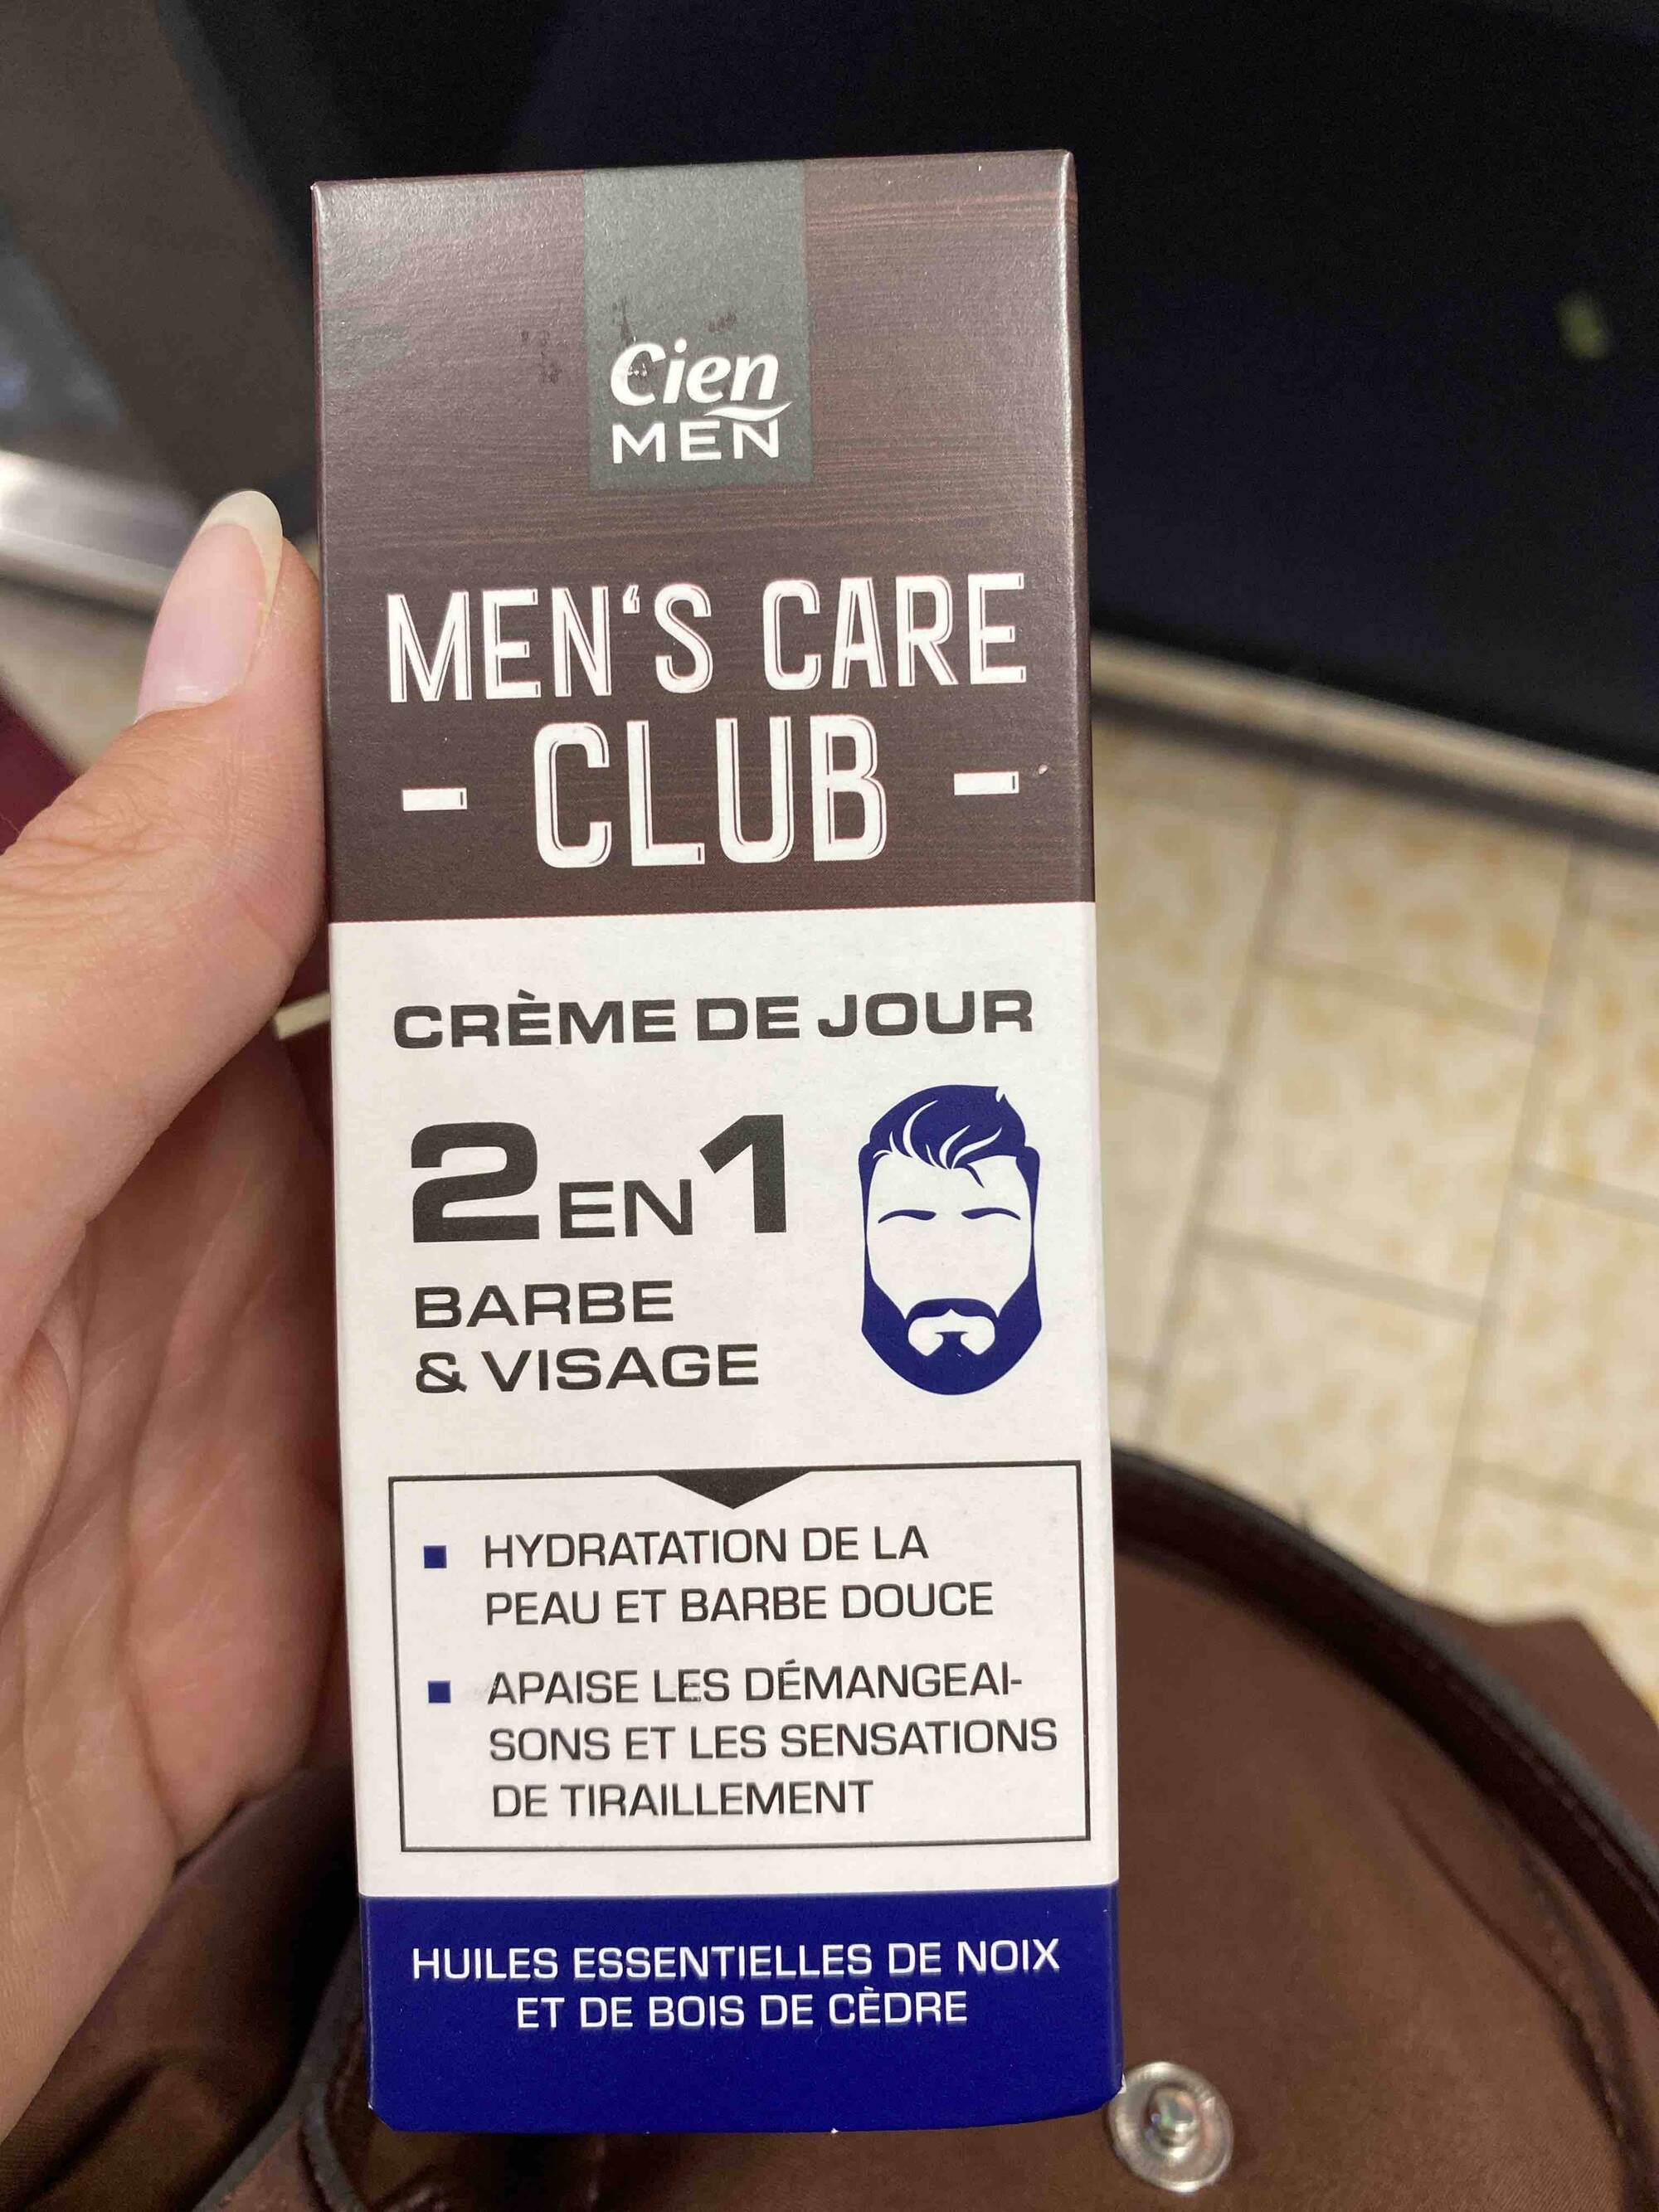 LIDL - Cien men's care club - Crème de jour 2 en 1